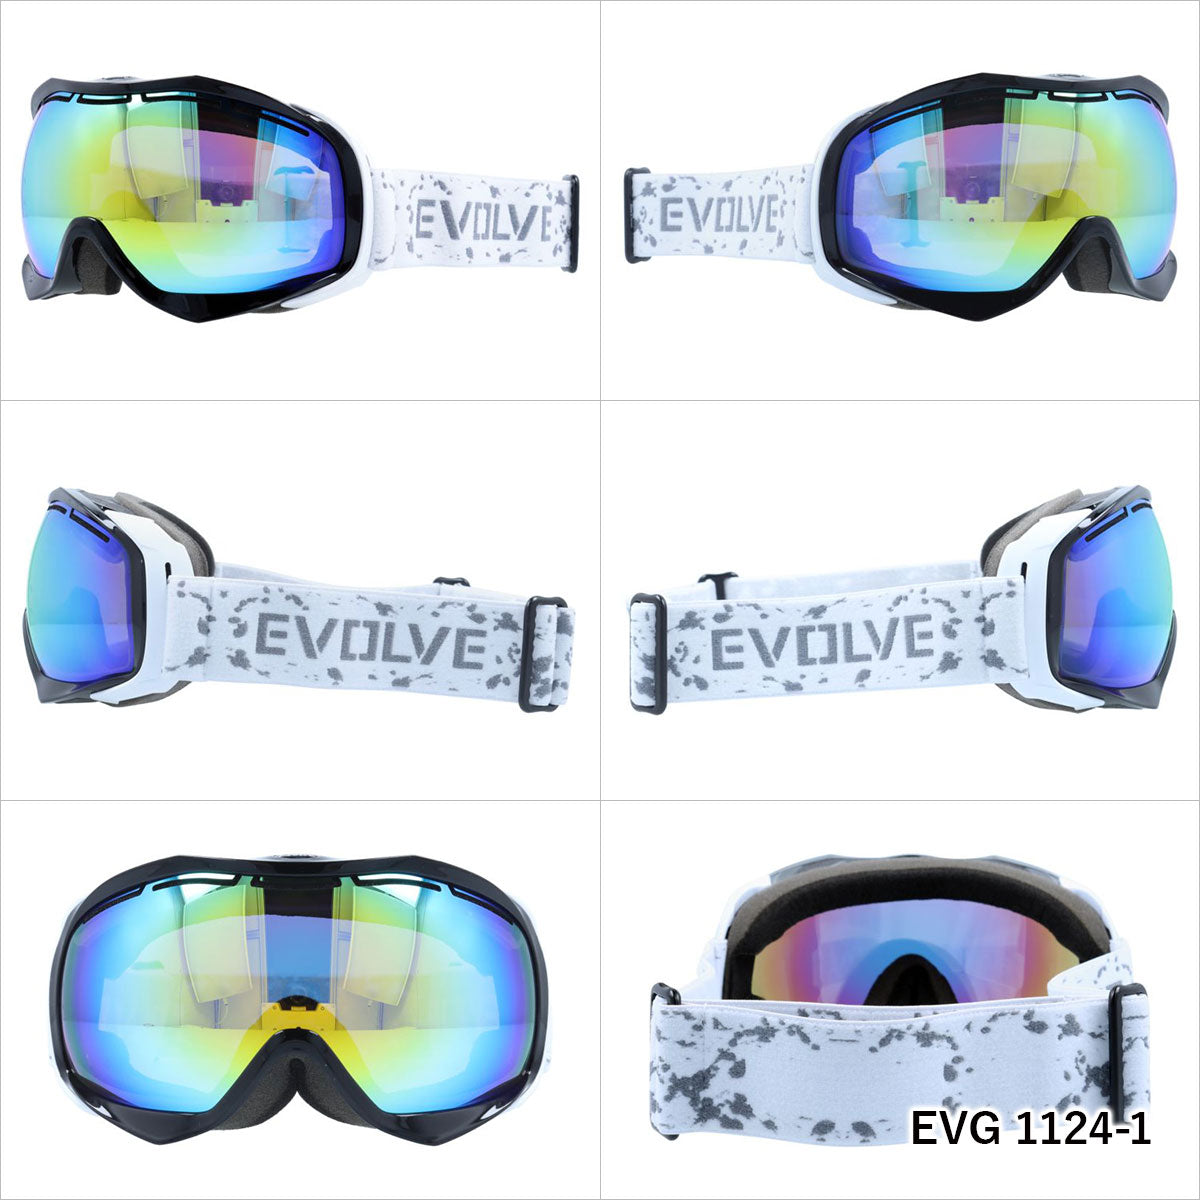 イヴァルヴ ゴーグル ミラーレンズ アジアンフィット EVOLVE EVG 1124 メンズ レディース スキー スノーボード ウィンタースポーツ 曇り防止 球面レンズ ダブルレンズ 眼鏡対応 ヘルメット対応